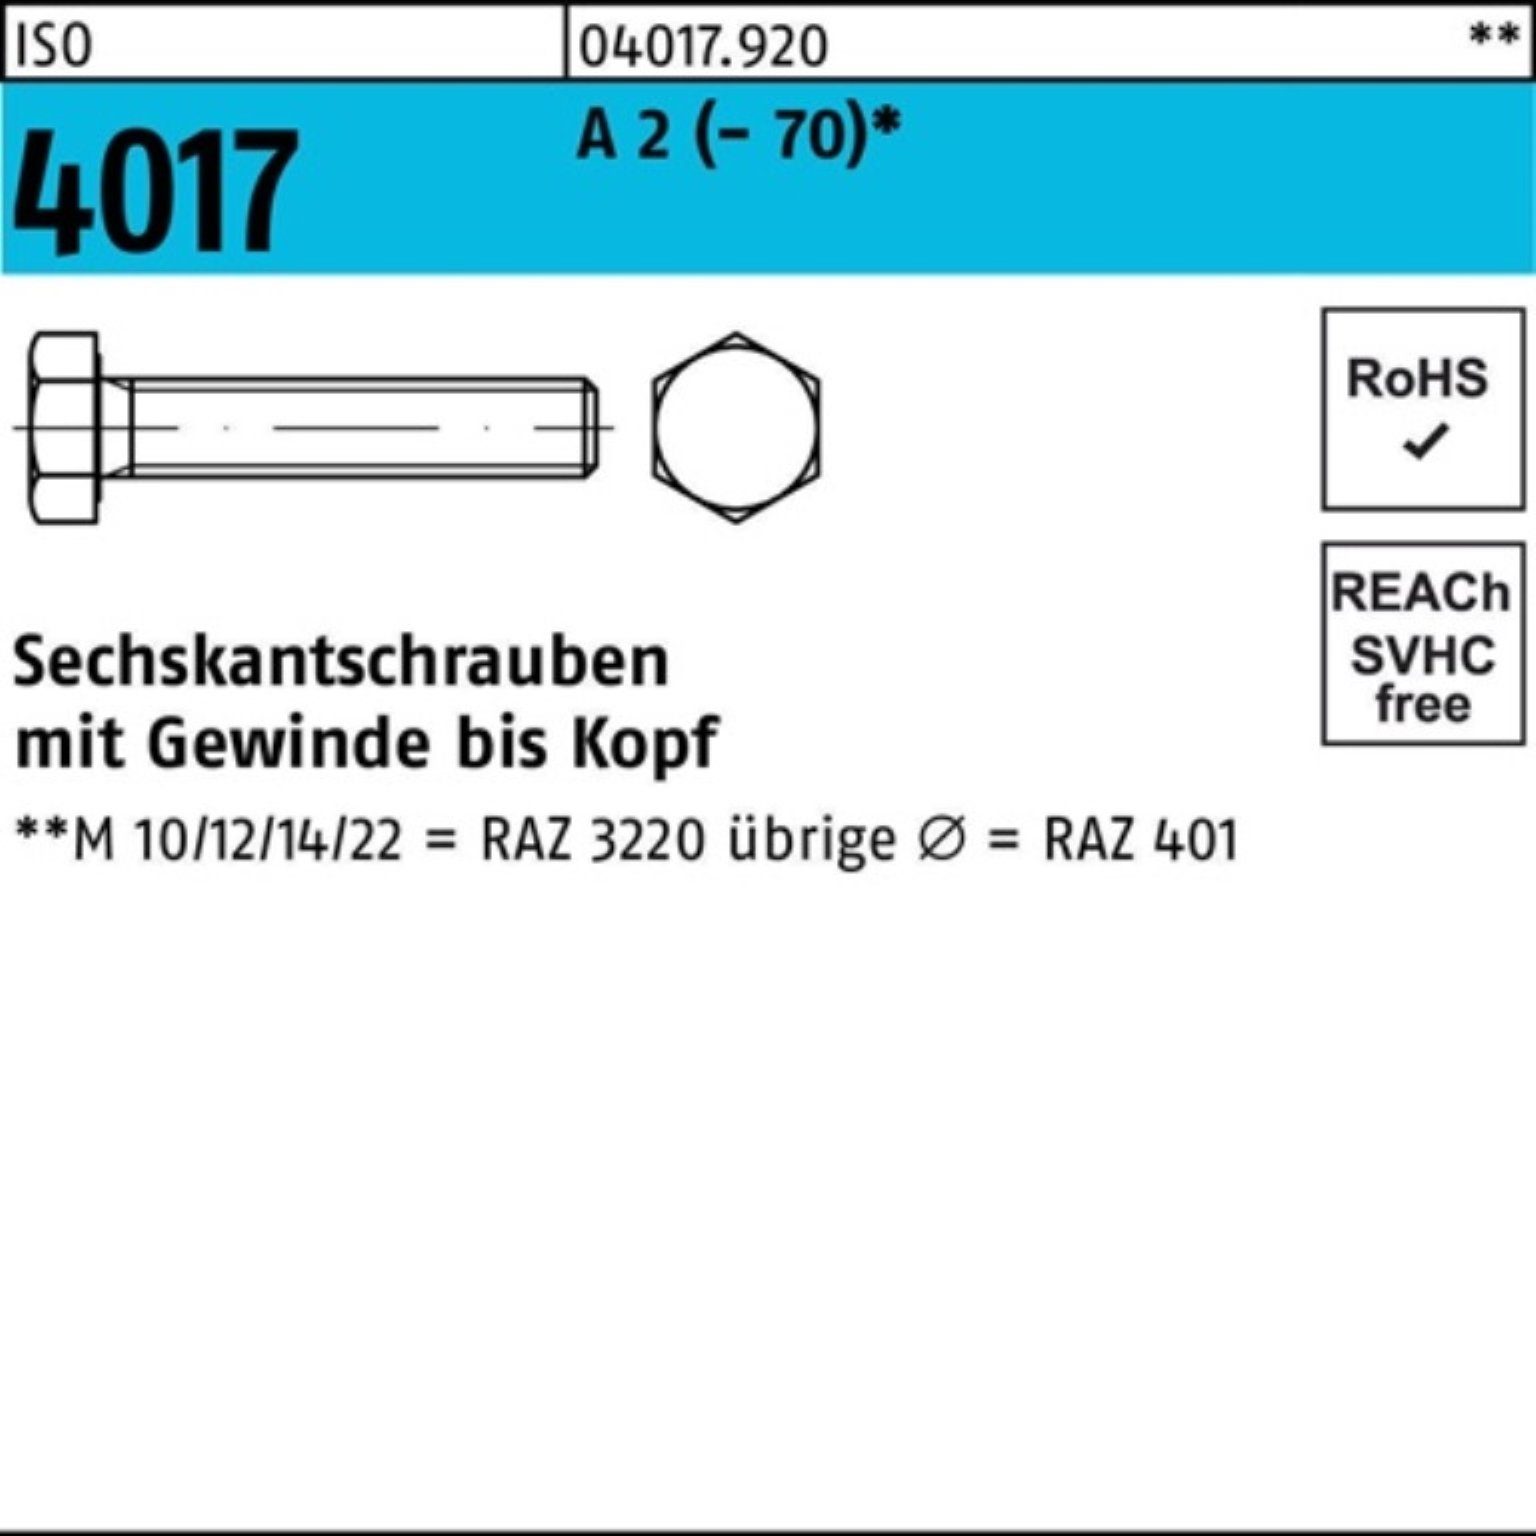 Pack (70) A 200 VG Bufab Sechskantschraube Sechskantschraube M8x 50 Stück 2 4017 100er ISO